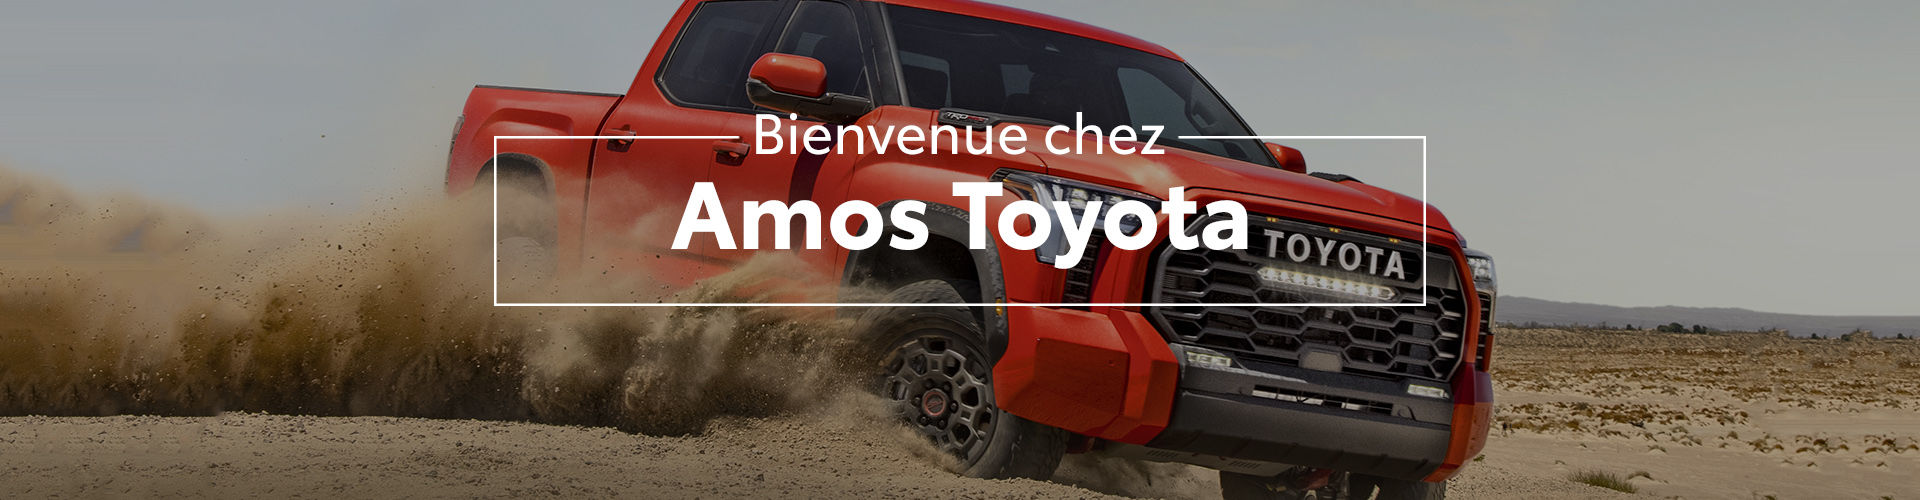 Bienvenue chez Amos Toyota